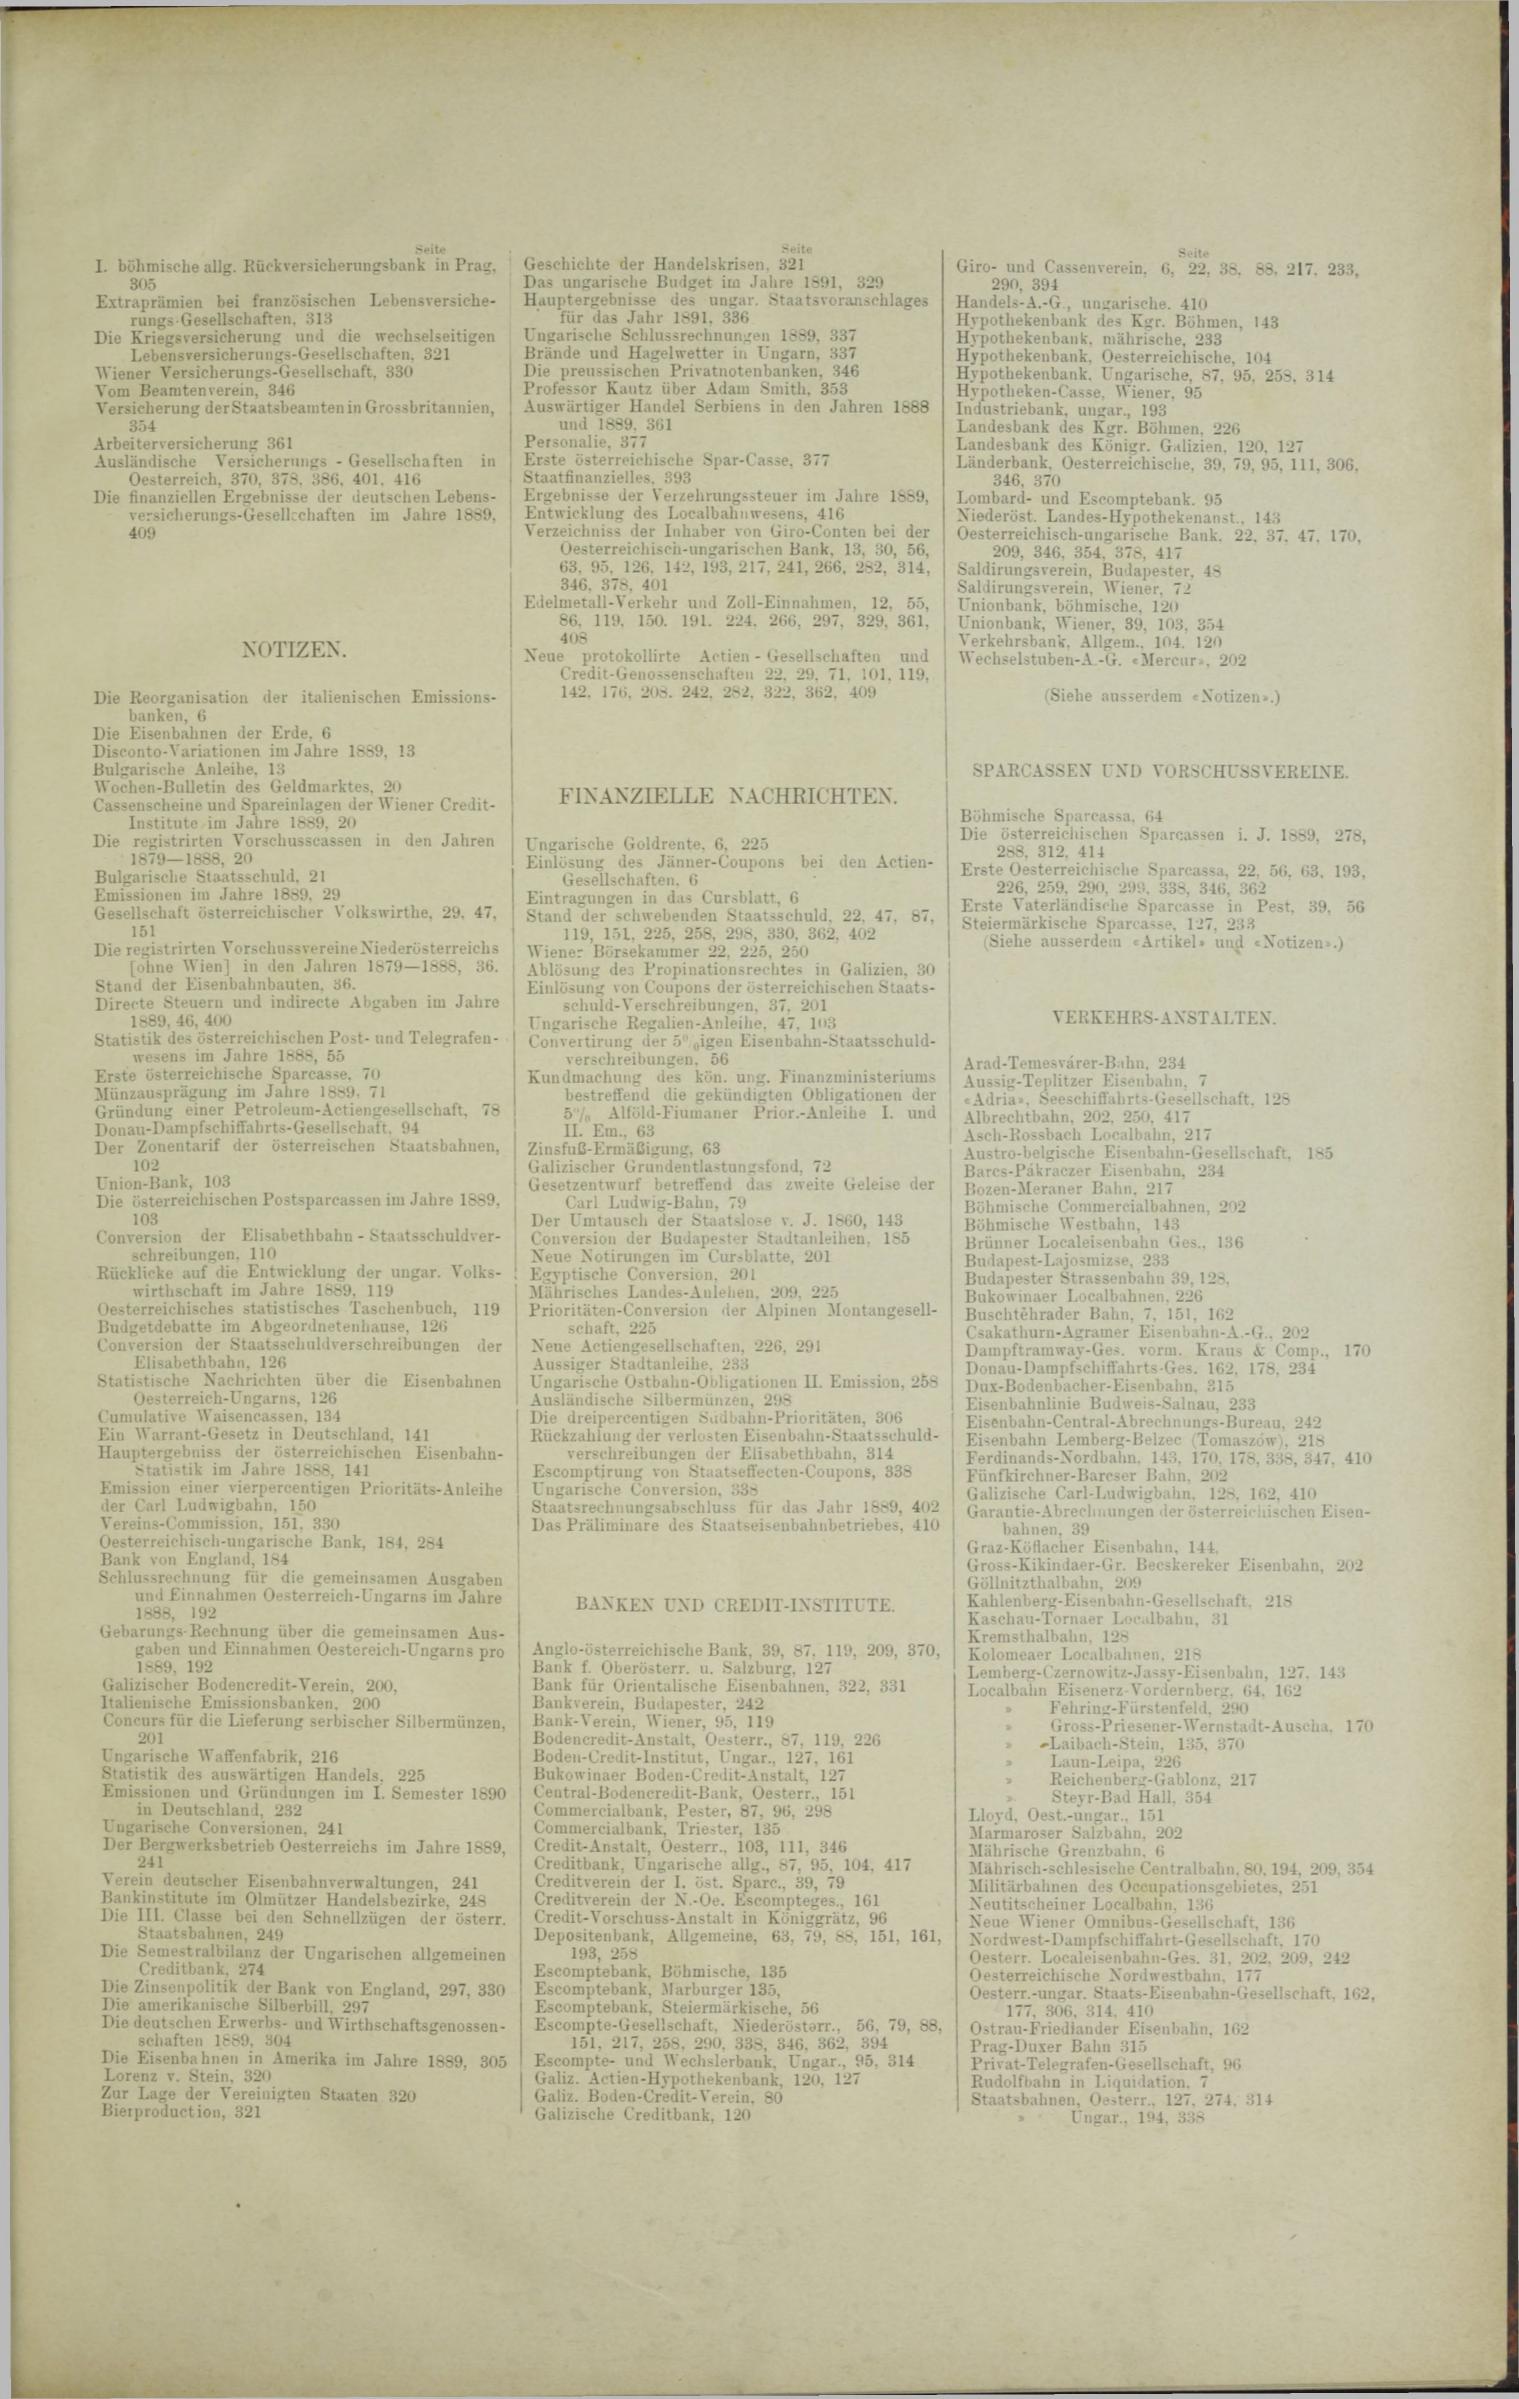 Der Tresor 27.11.1890 - Seite 11